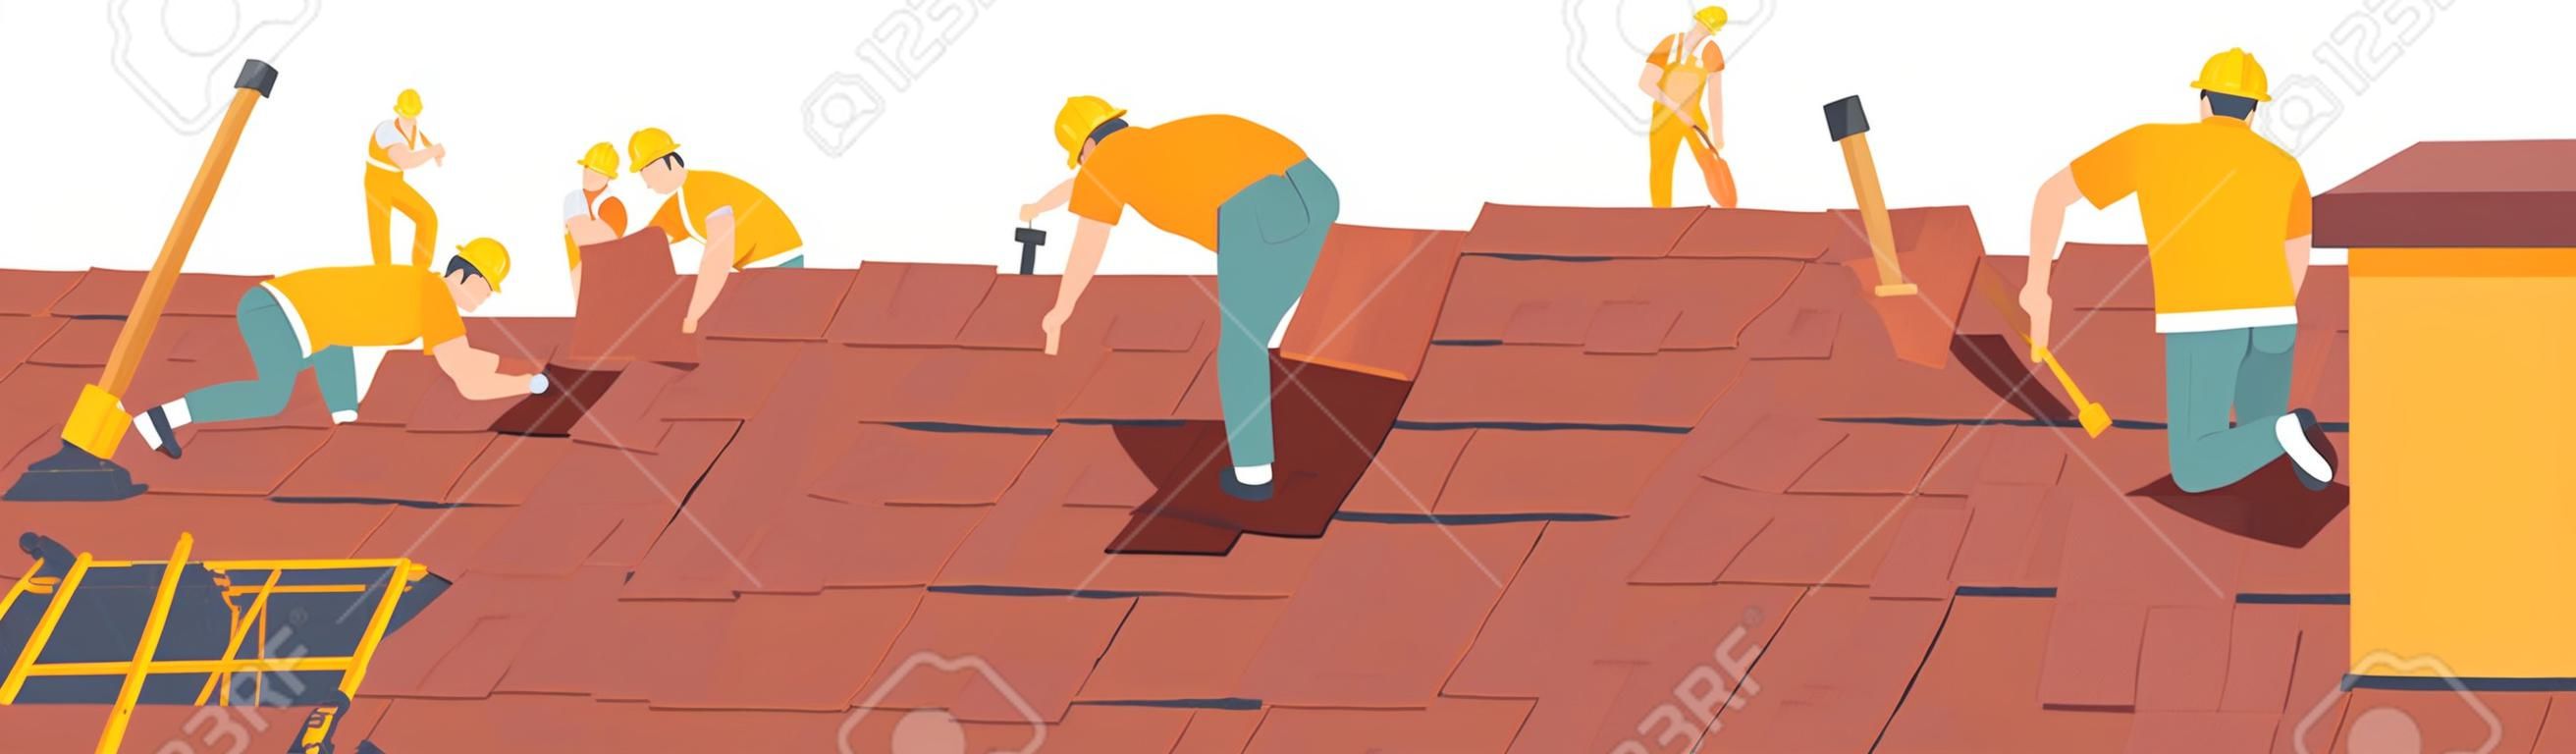 I personaggi dei lavoratori edili del tetto conducono lavori di copertura, riparazione di case, costruzione di strutture, fissaggio di case di tegole sul tetto